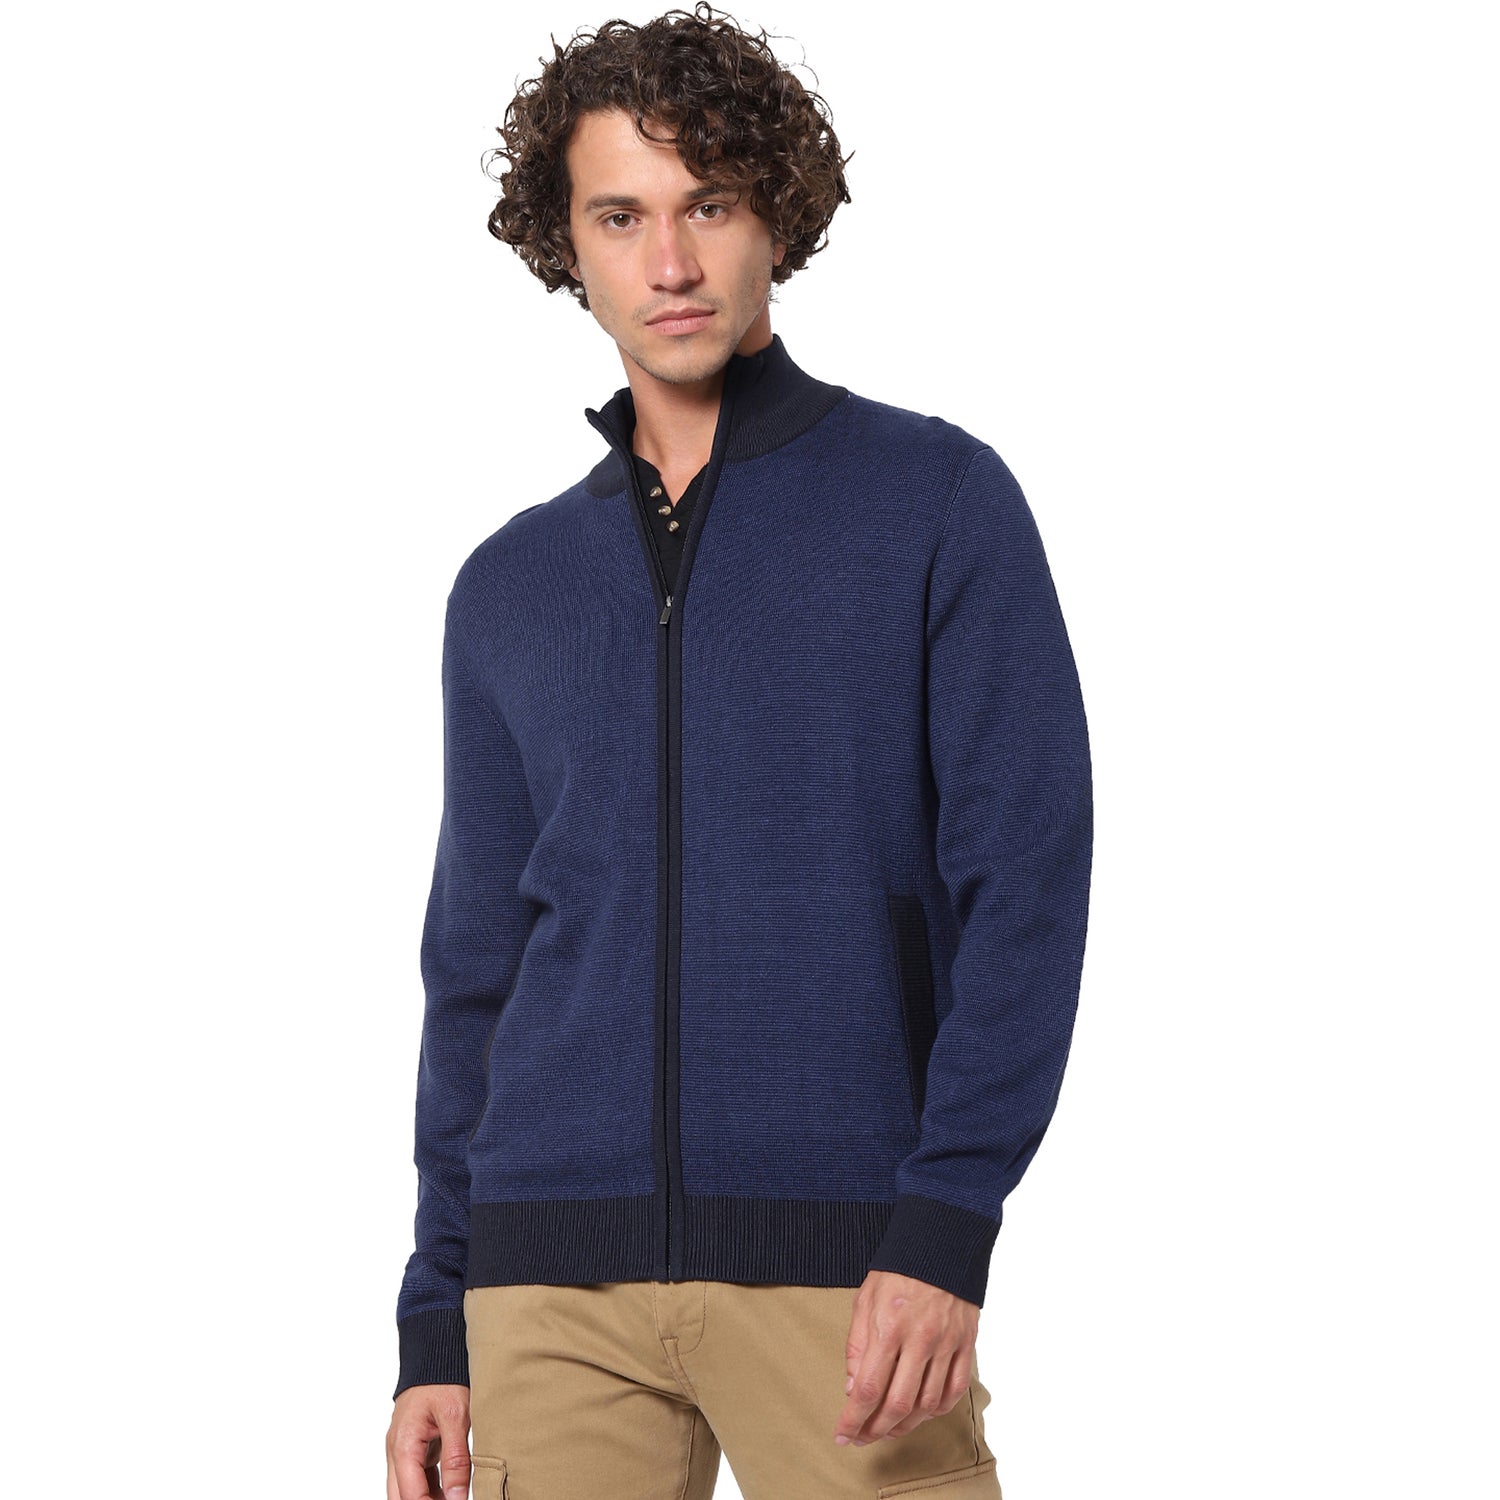 Blue Solid Sweater (SEGILLOU)